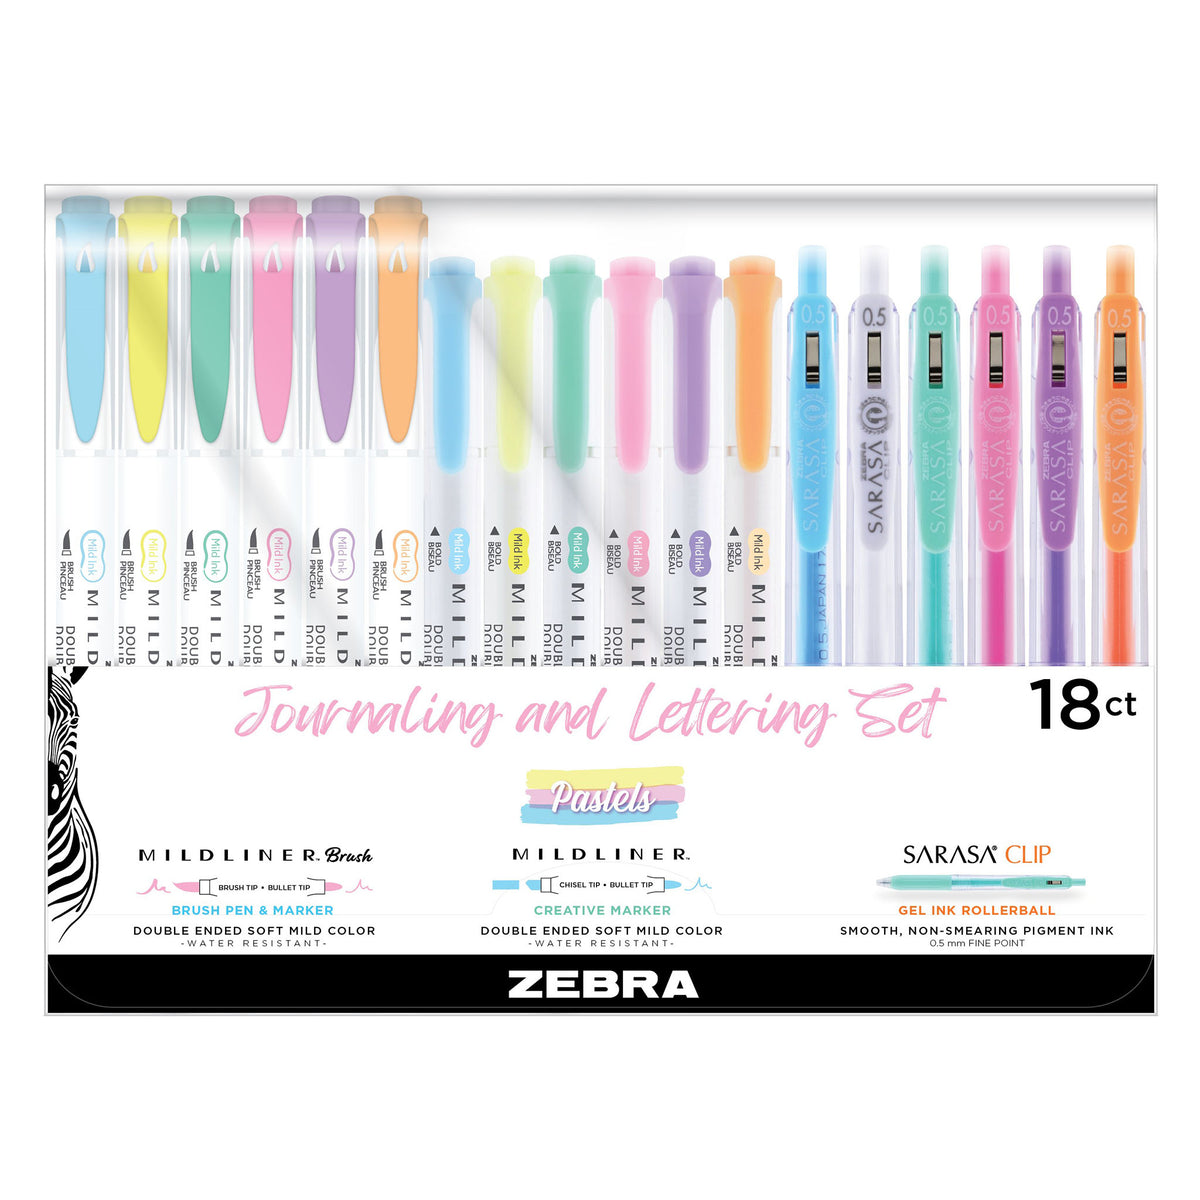 Bouncy Lettering Tutorial Using Brush Pens – Zebra Pen